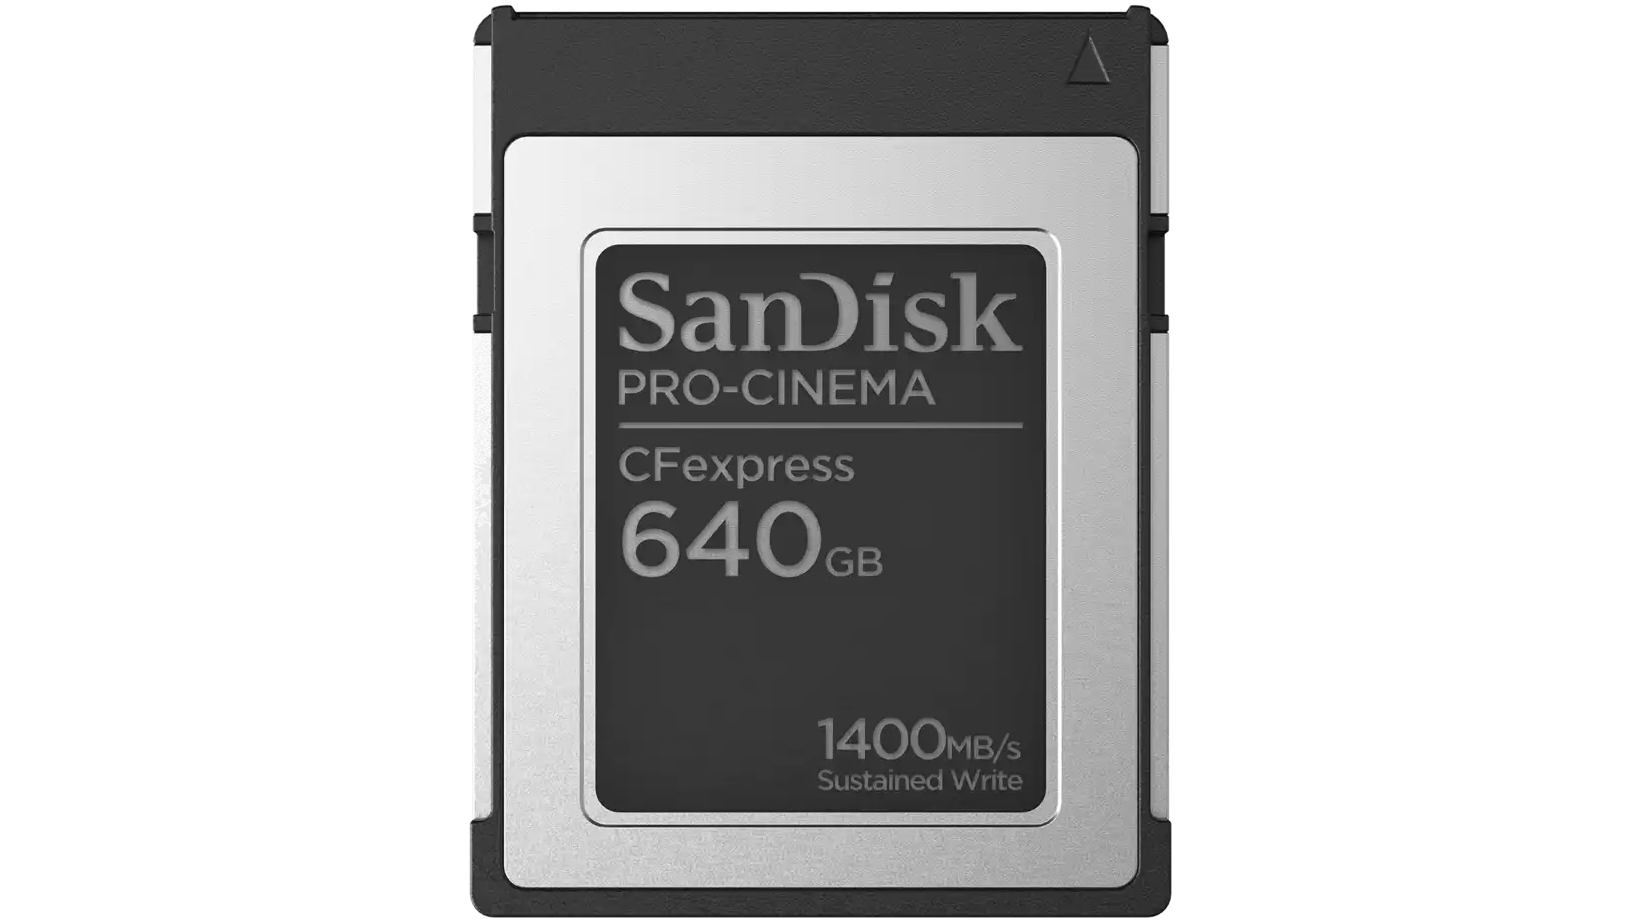 بطاقة ذاكرة SanDisk PRO-CINEMA CFexpress من النوع B